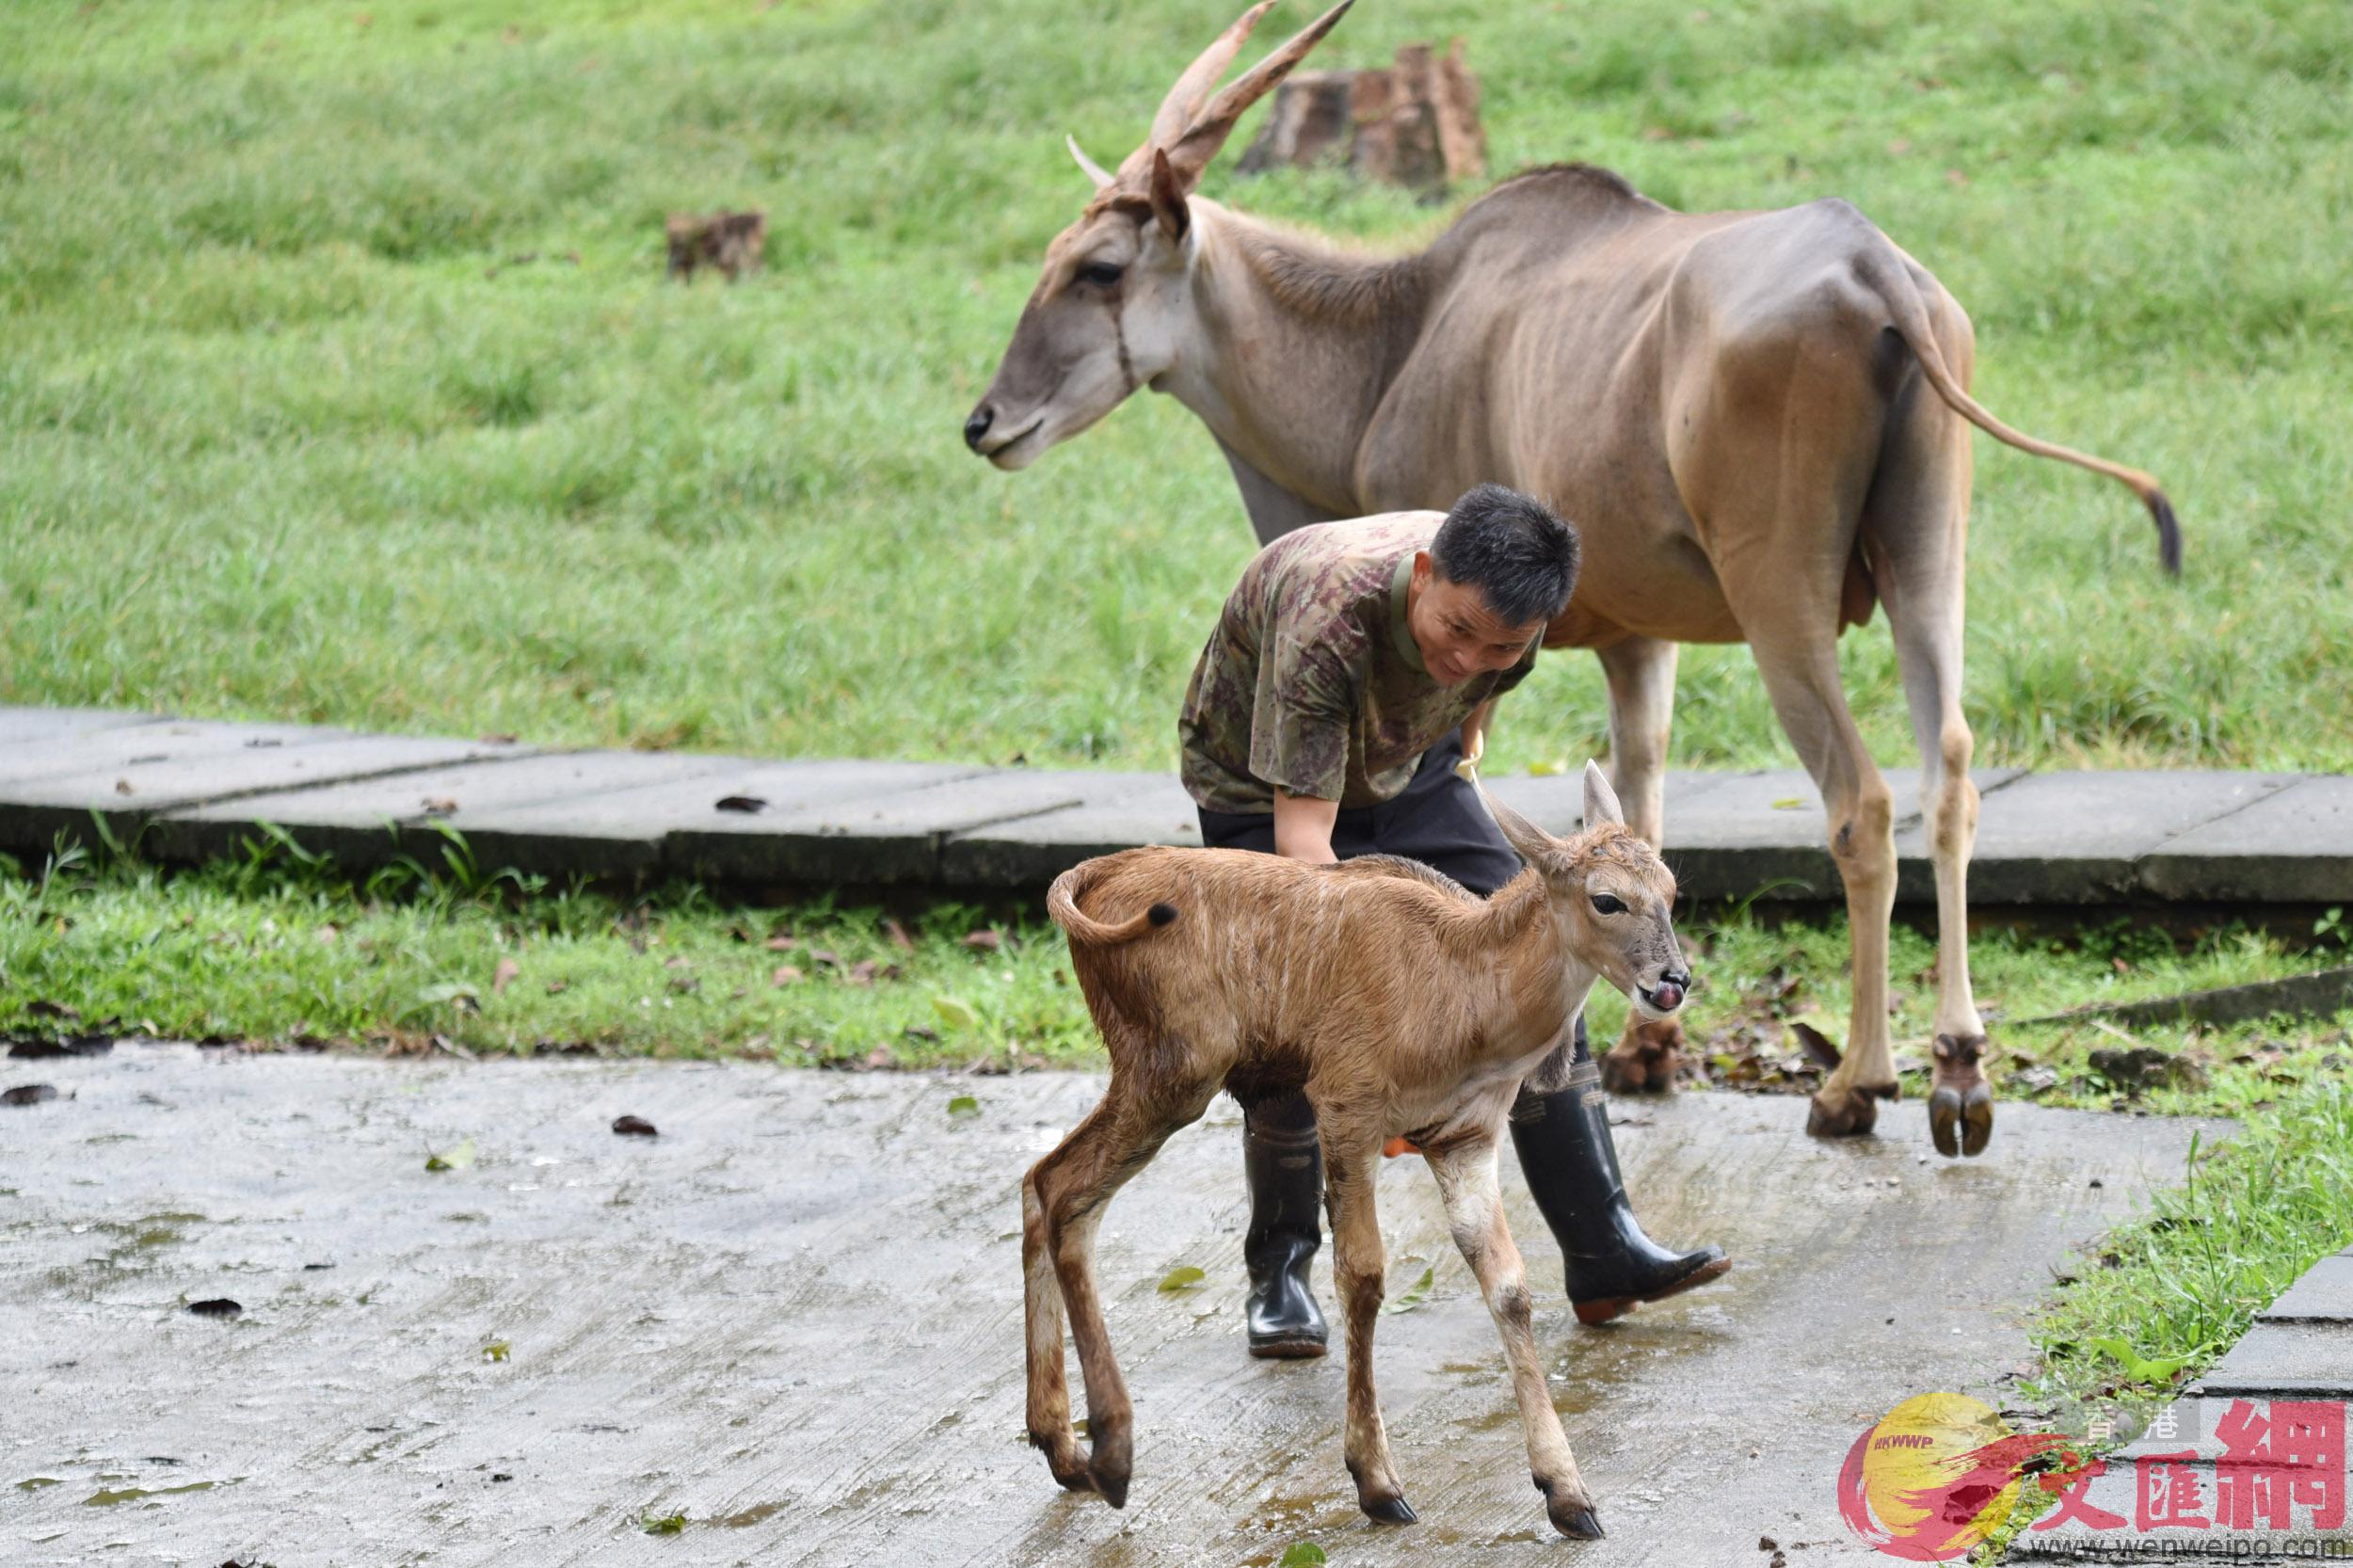 動物園飼養員為大羚羊寶寶做臍部護理工作